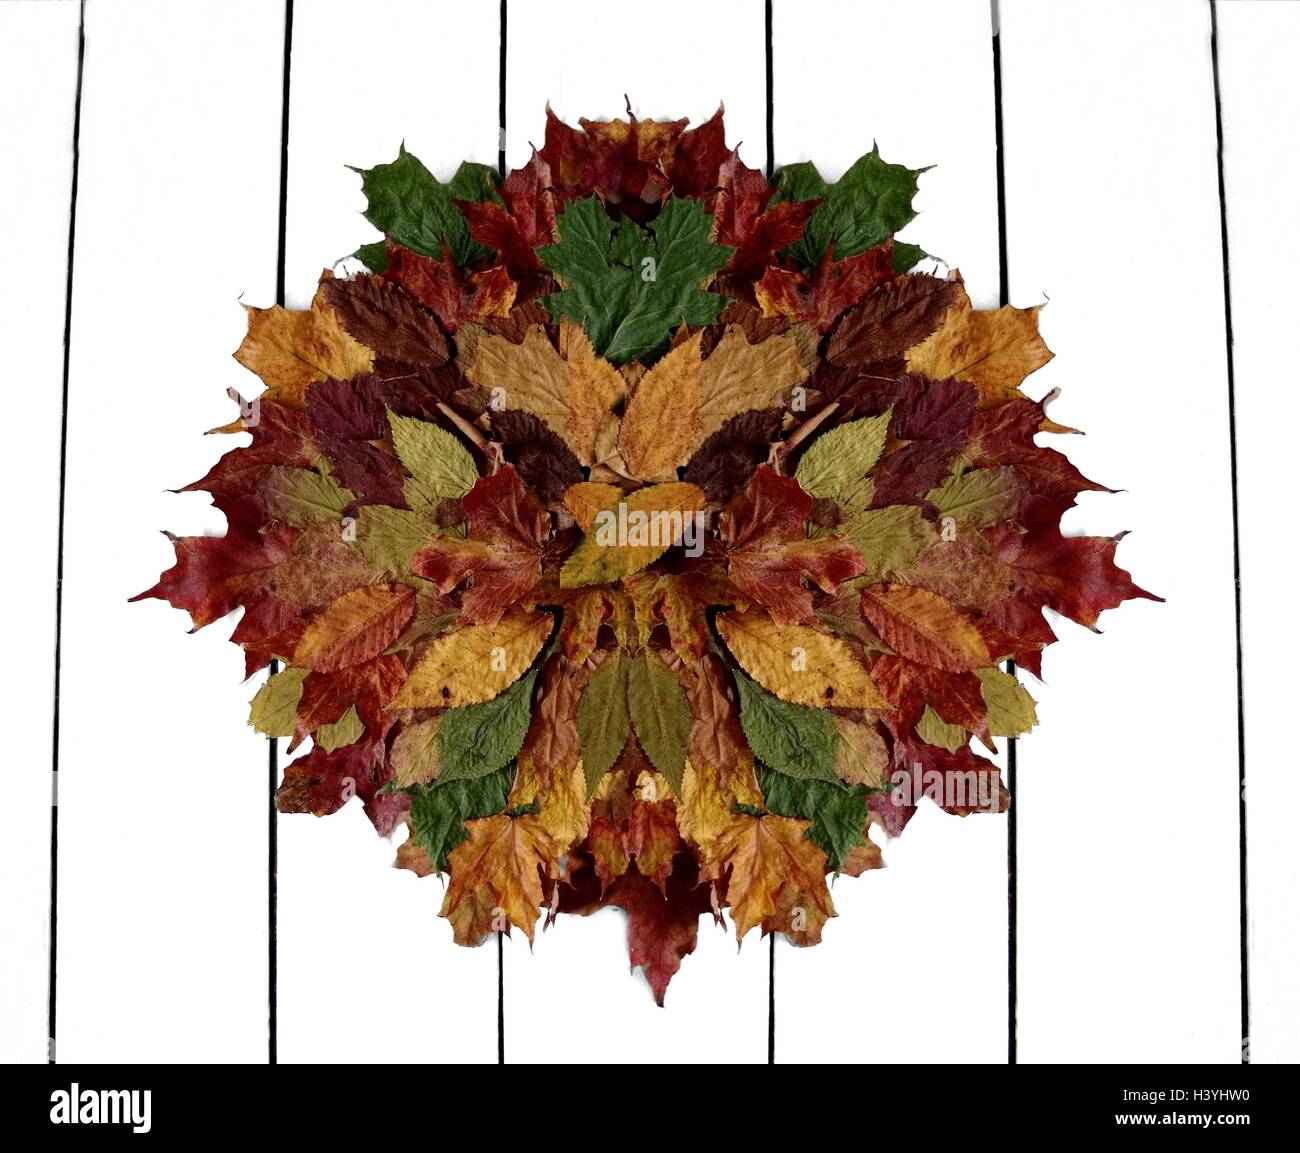 Raccolta e visualizzazione di autunno leafs per mostrare la vasta gamma di forme e colori per adattarsi alla stagione renderebbe un grande wall art Foto Stock